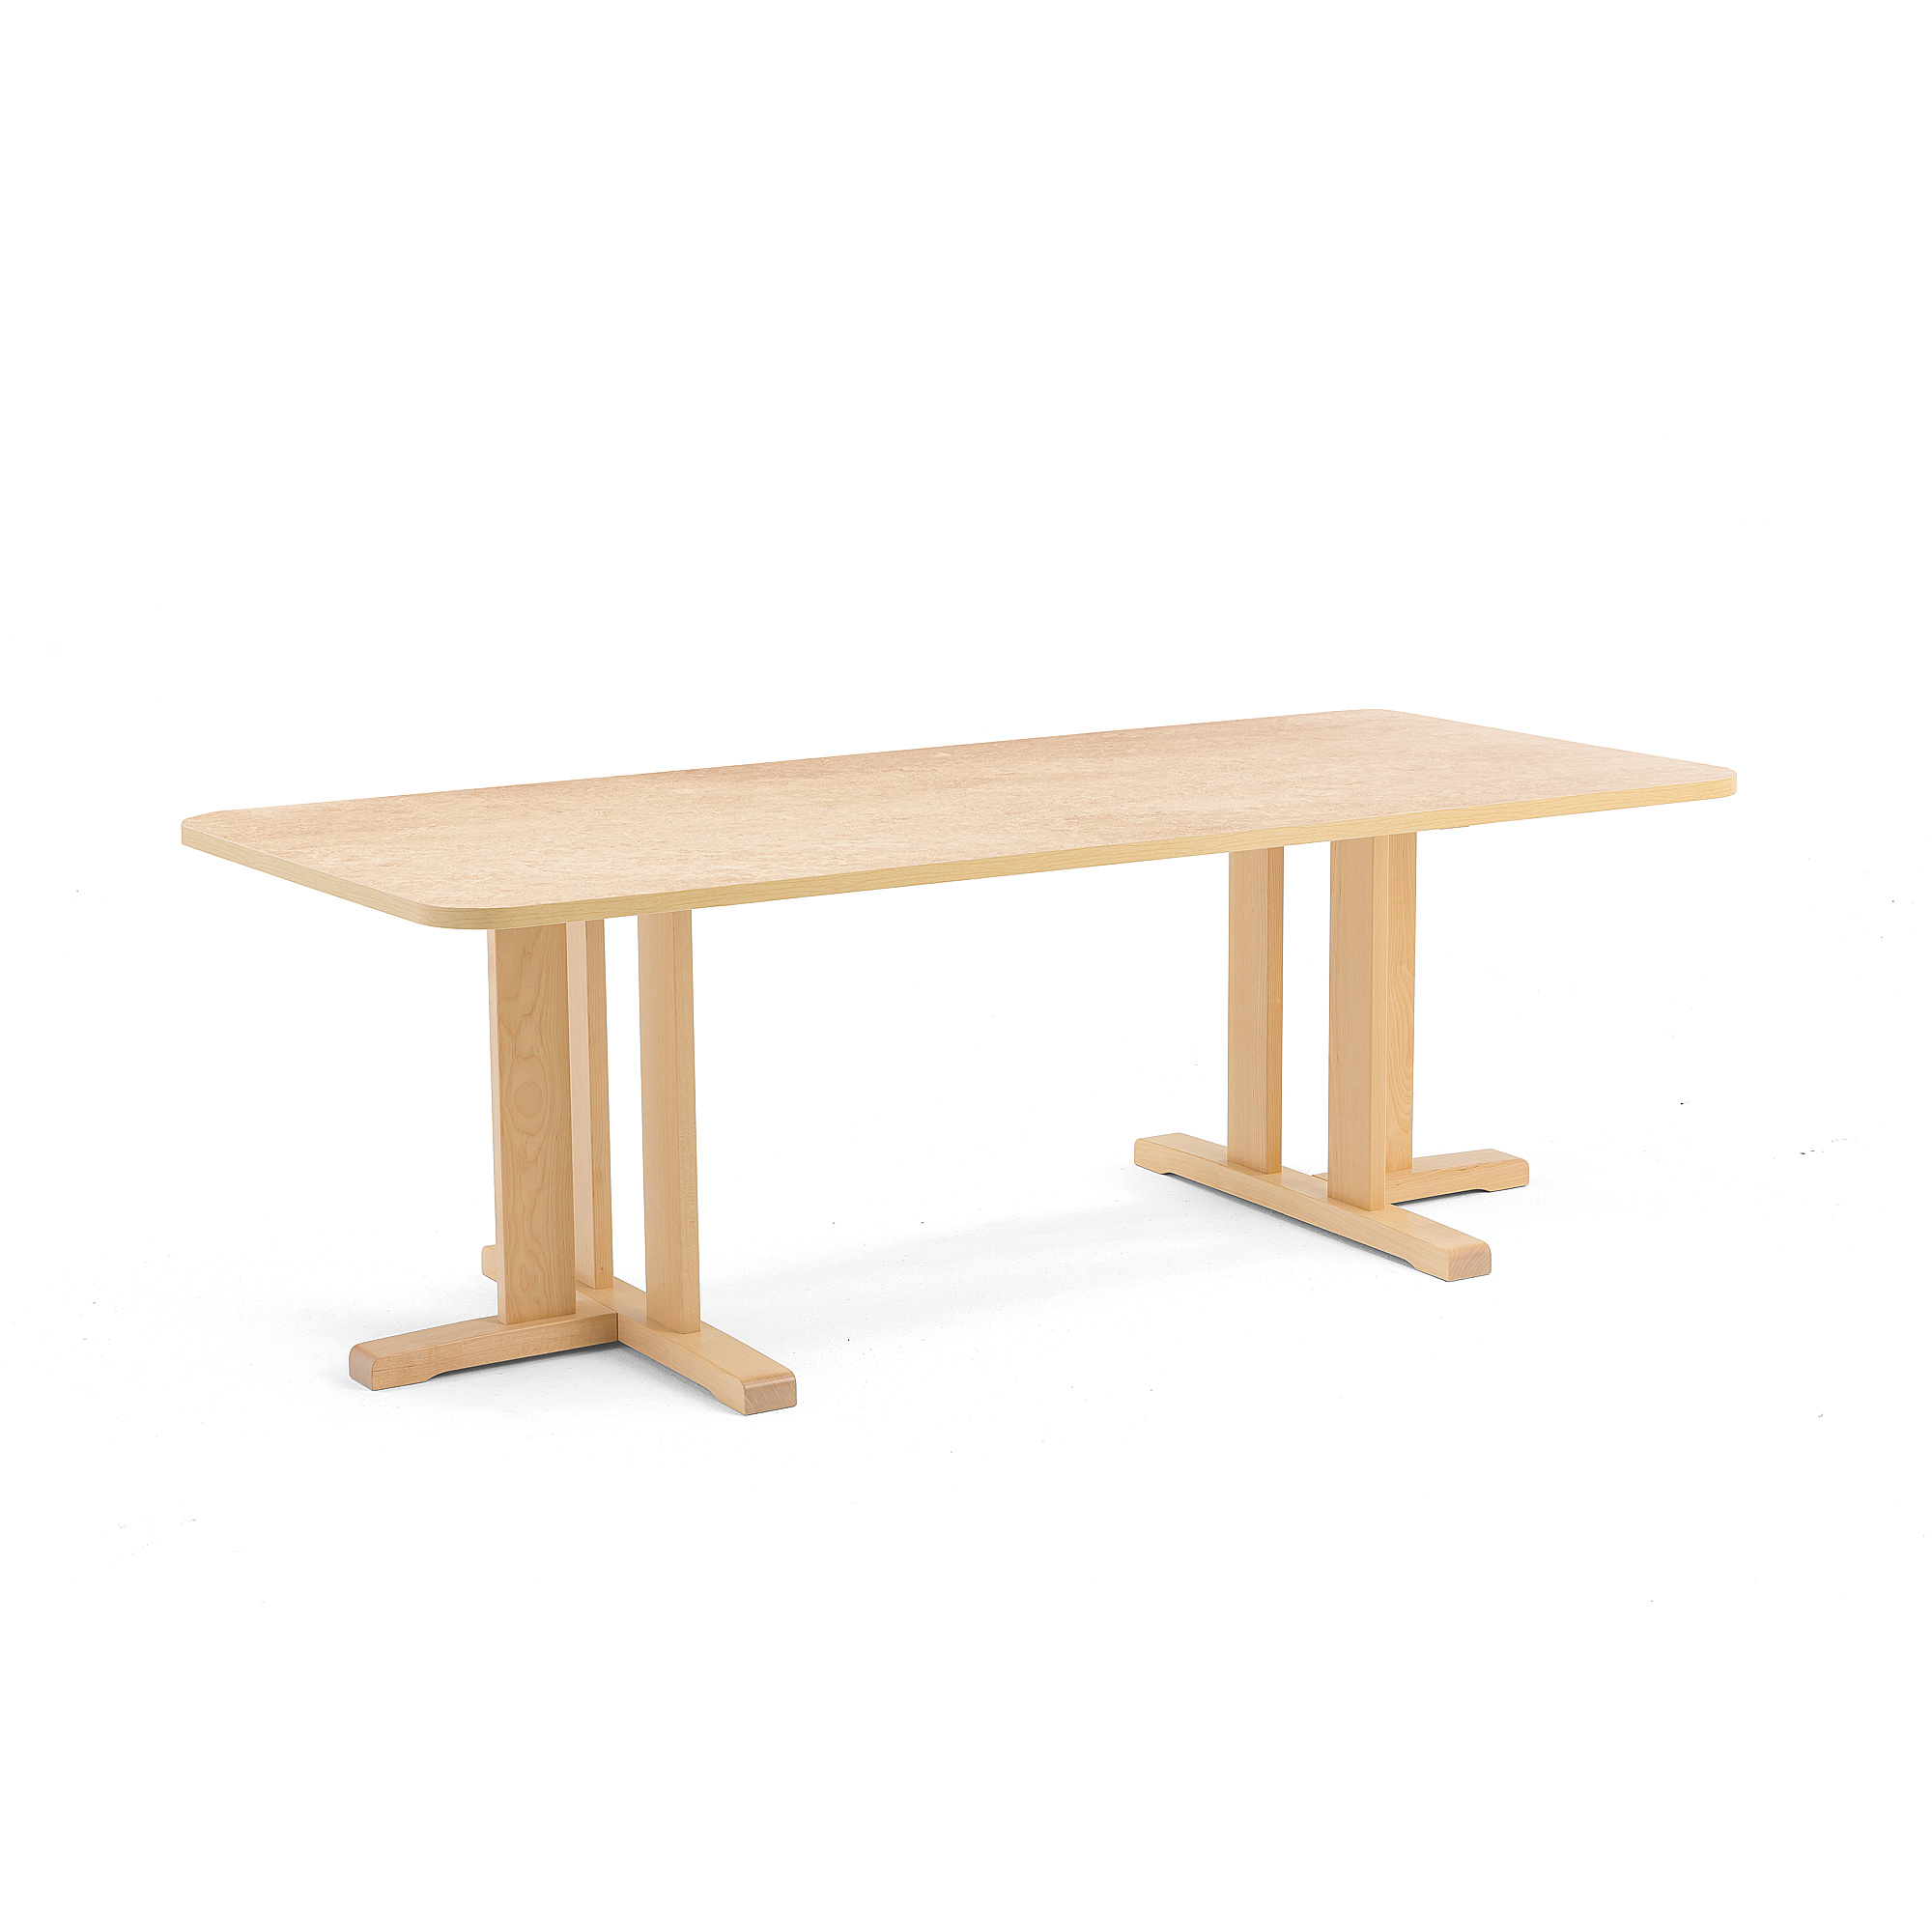 Stůl KUPOL, 1800x800x600 mm, obdélník, akustické linoleum, bříza/béžová